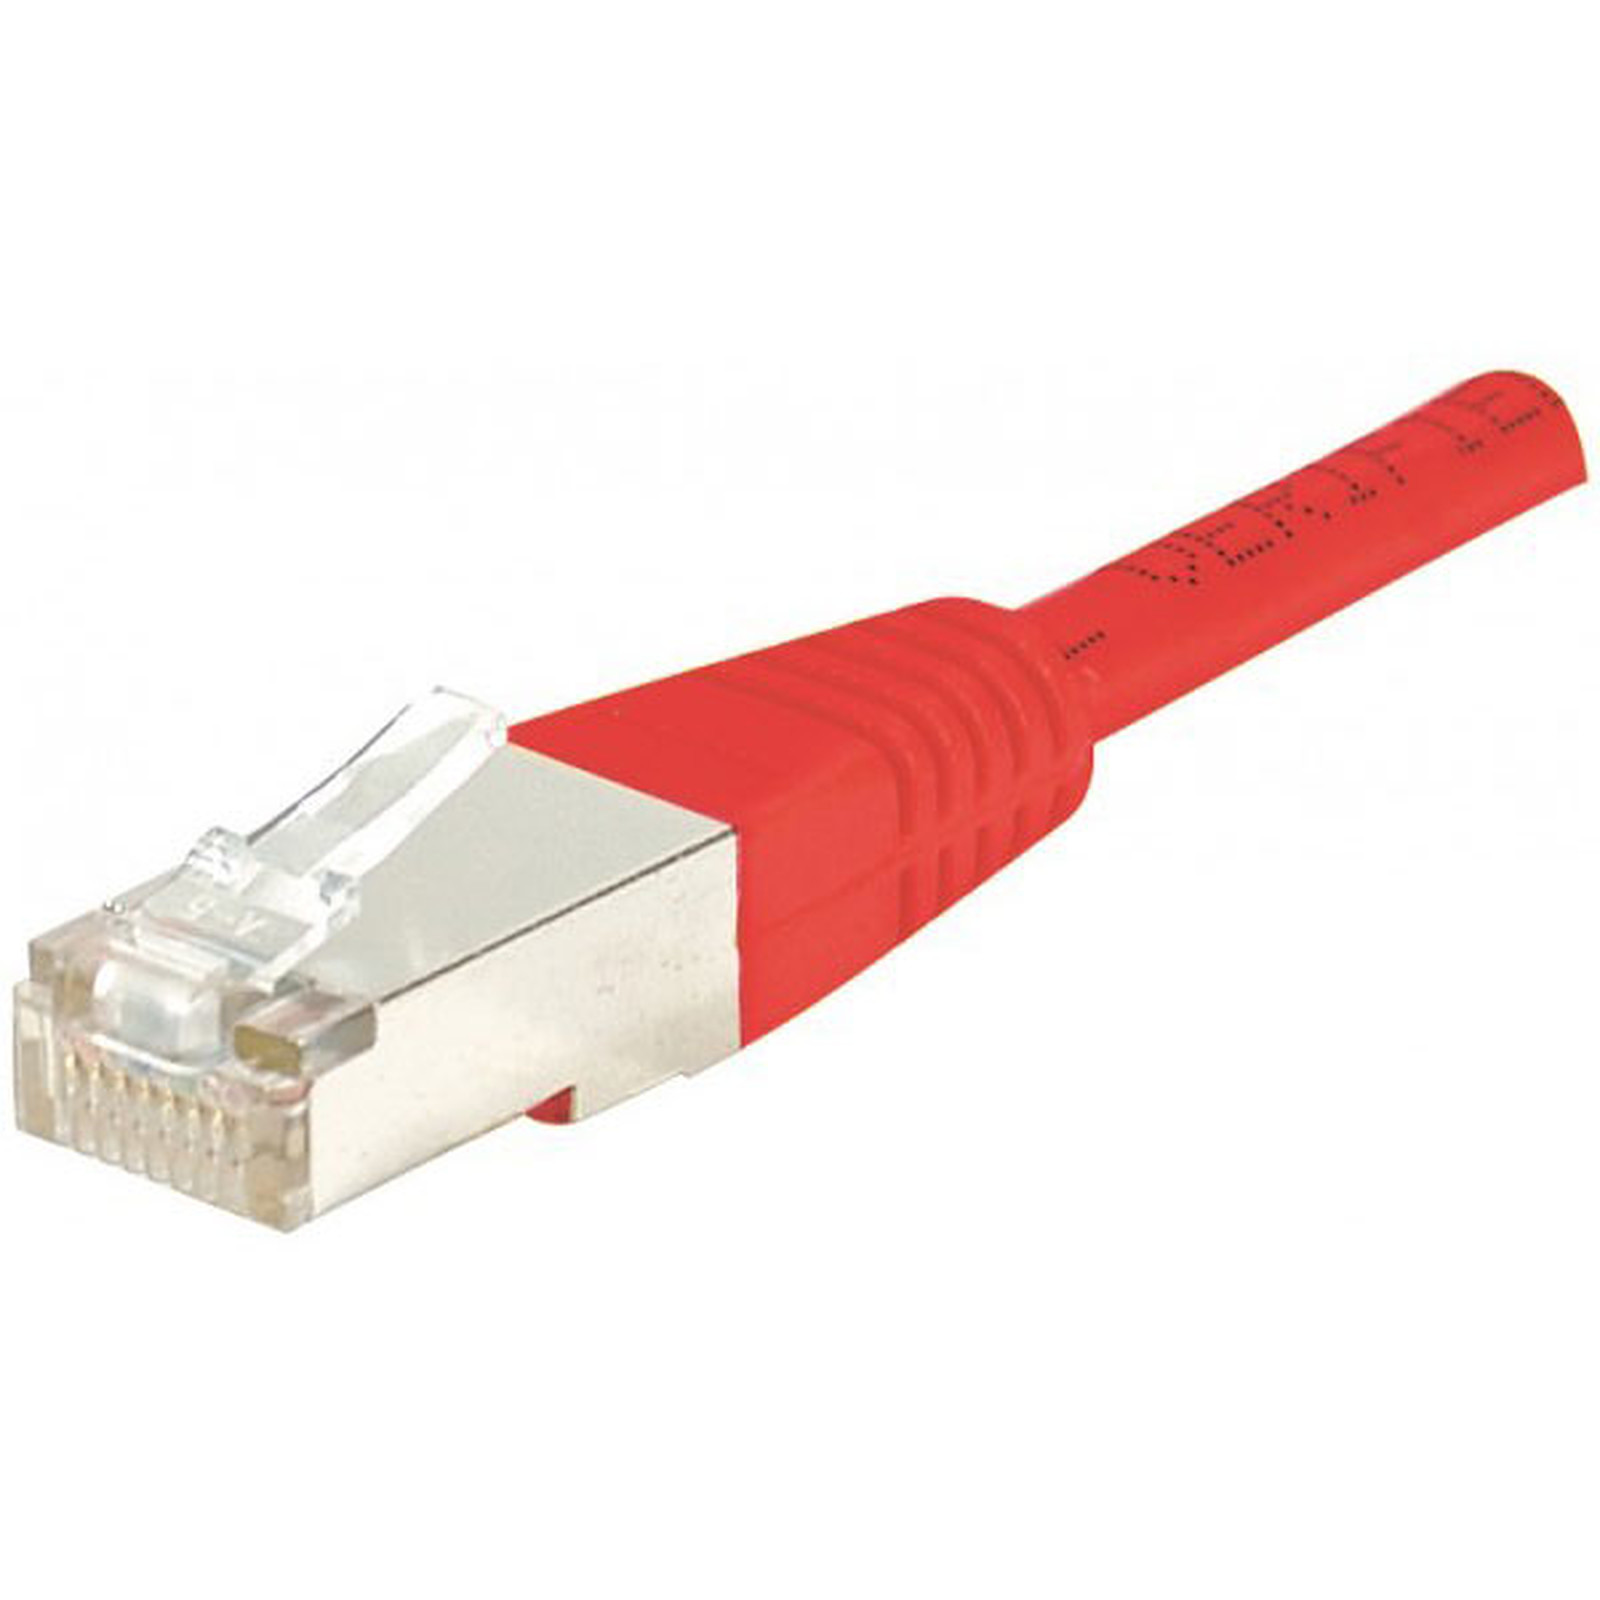 Cable RJ45 categorie 5e F/UTP 0.5 m (Rouge) - Cable RJ45 Generique